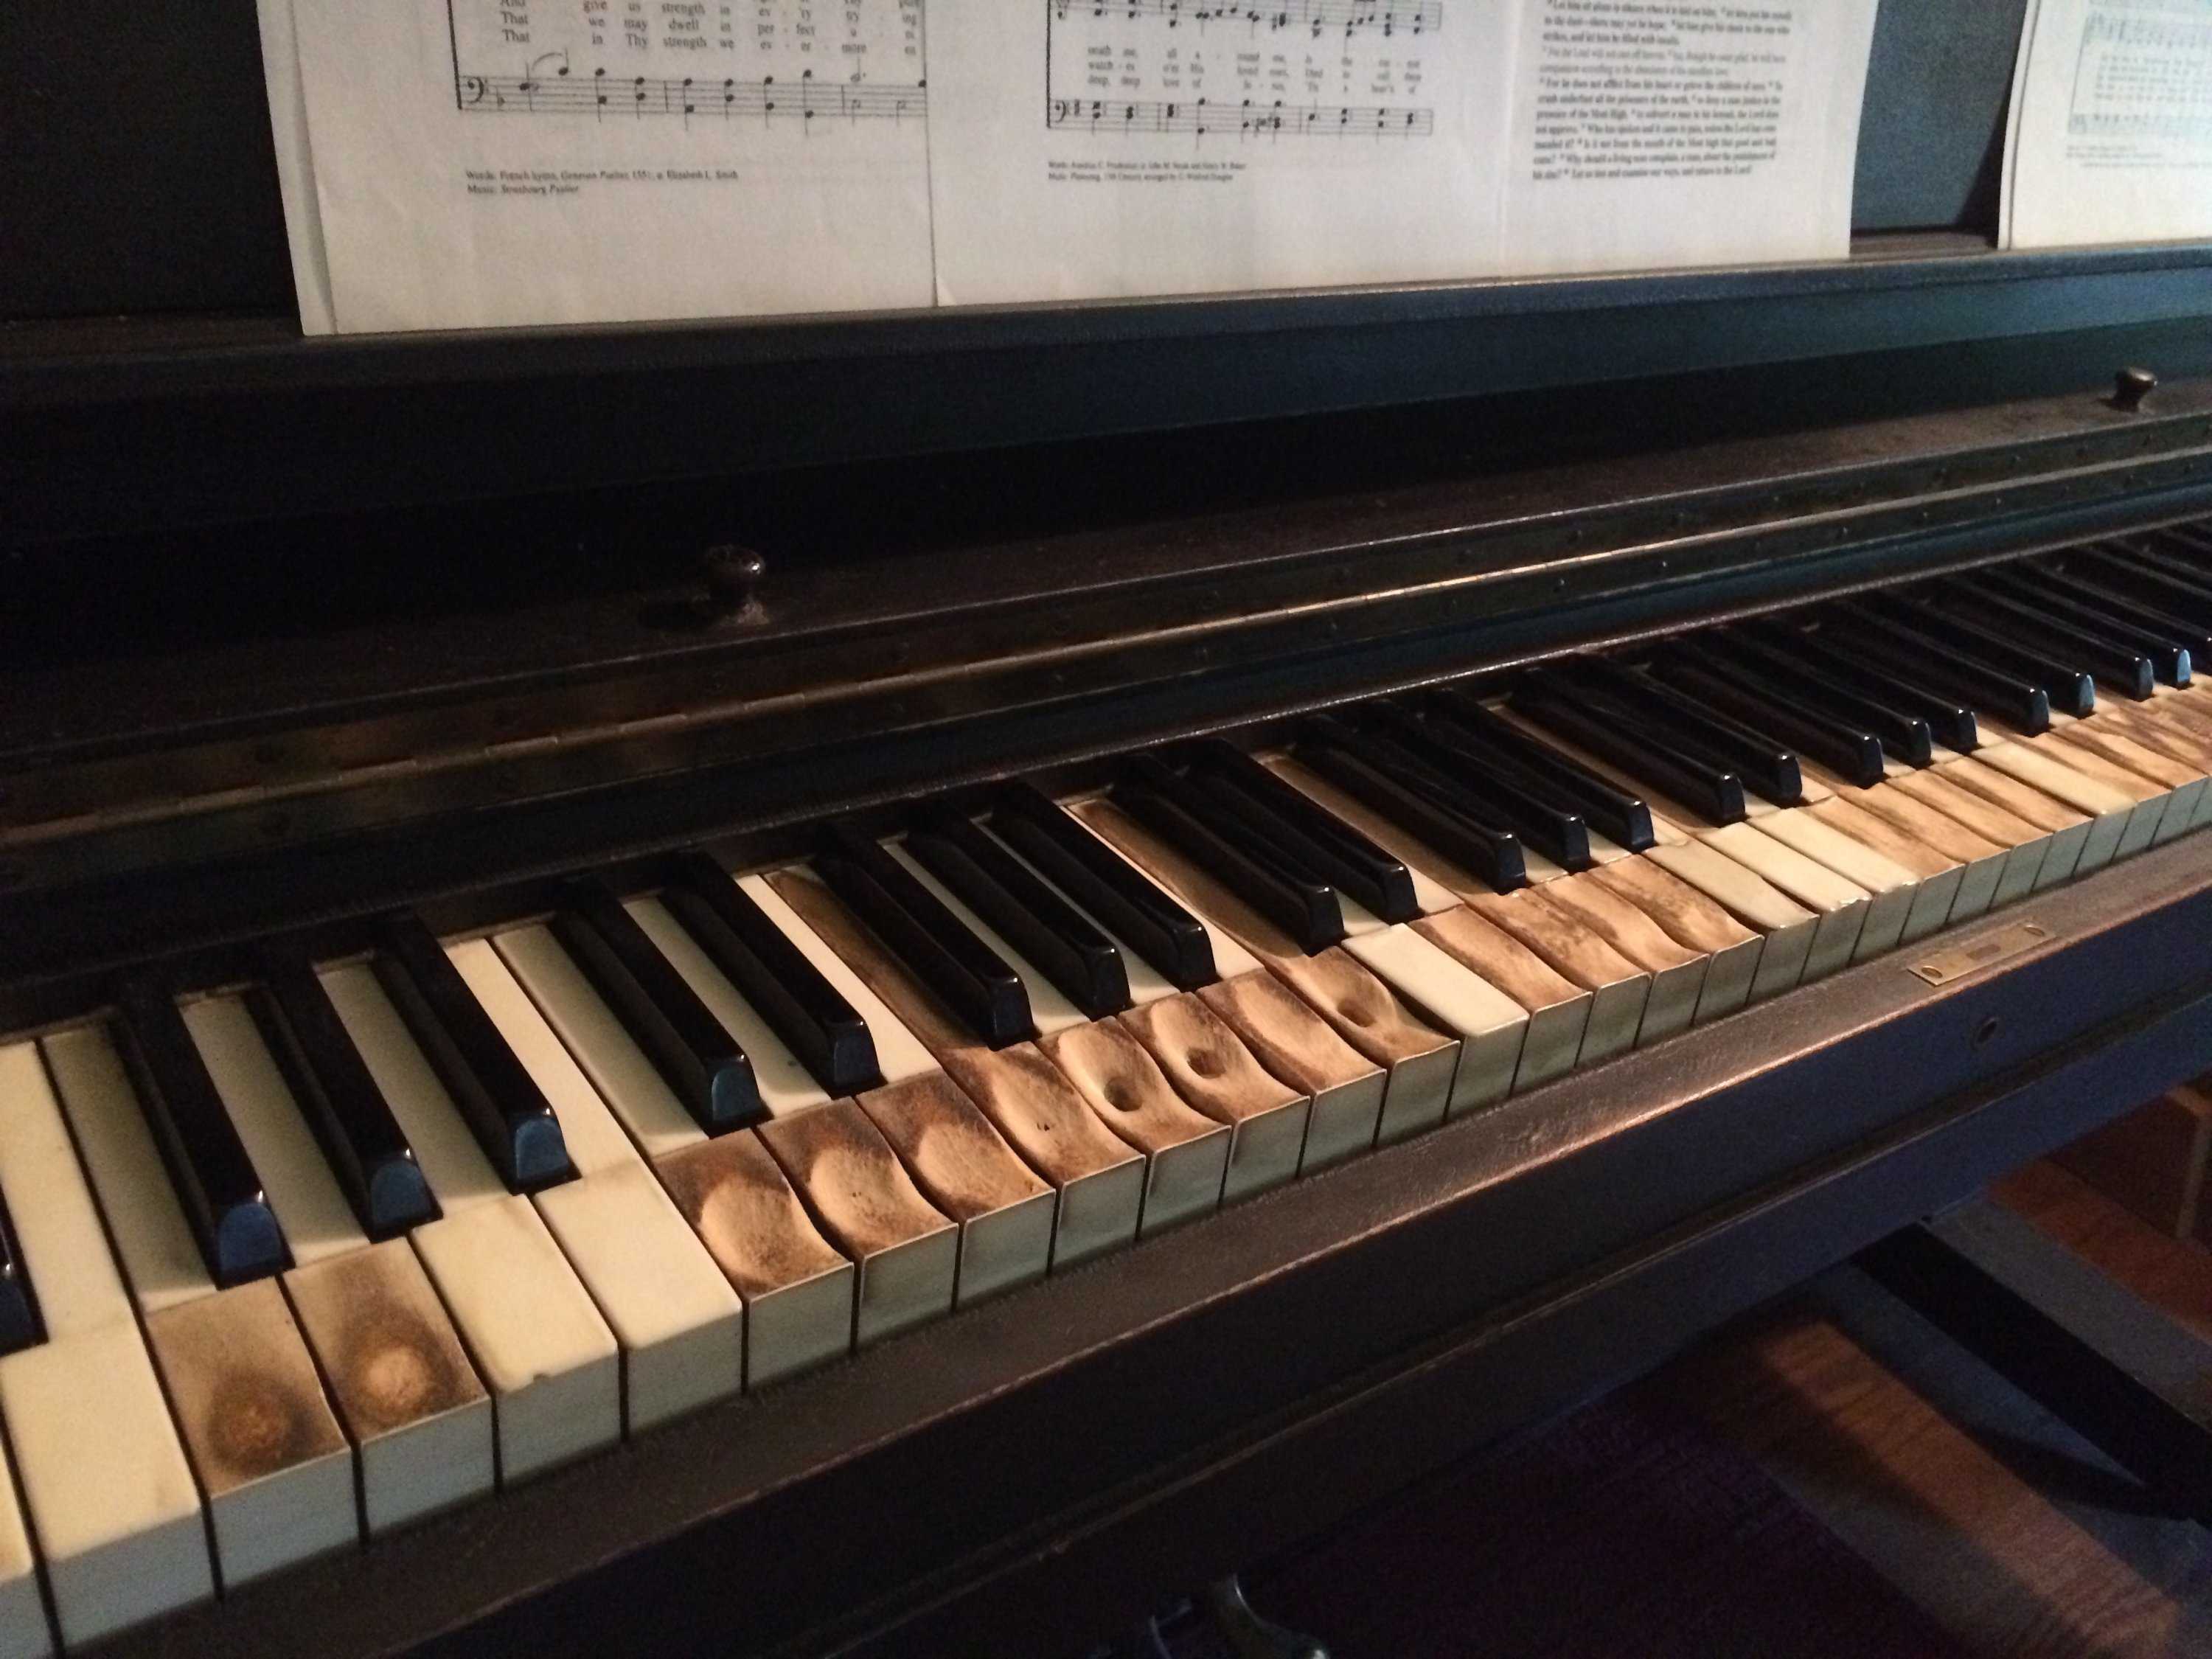 Сколько клавиш у пианино (фортепиано)?